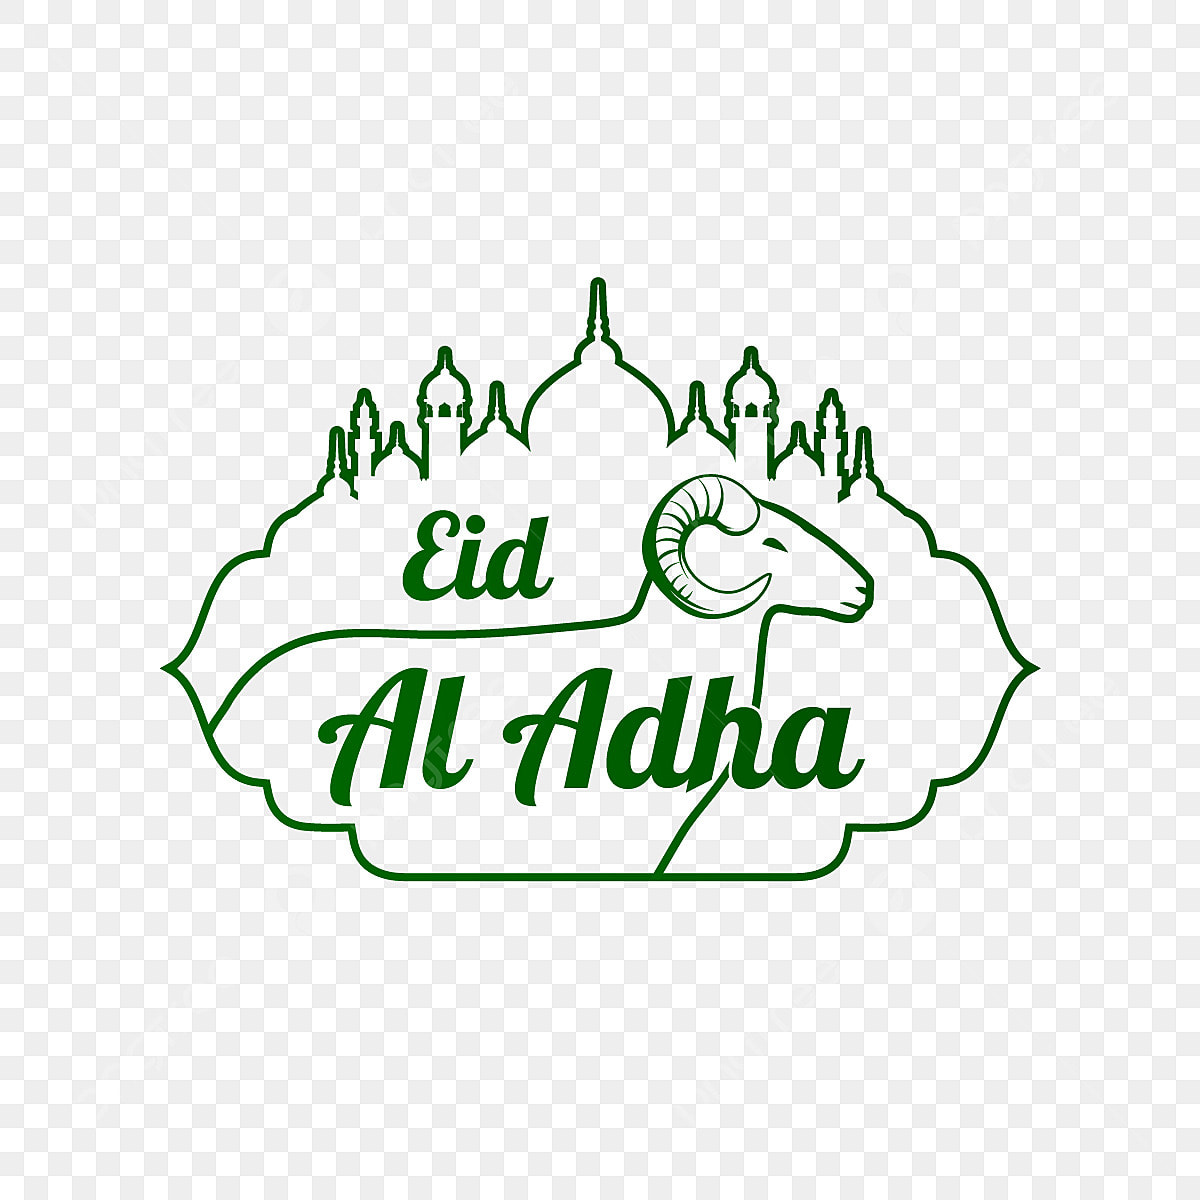 Eid adha essay